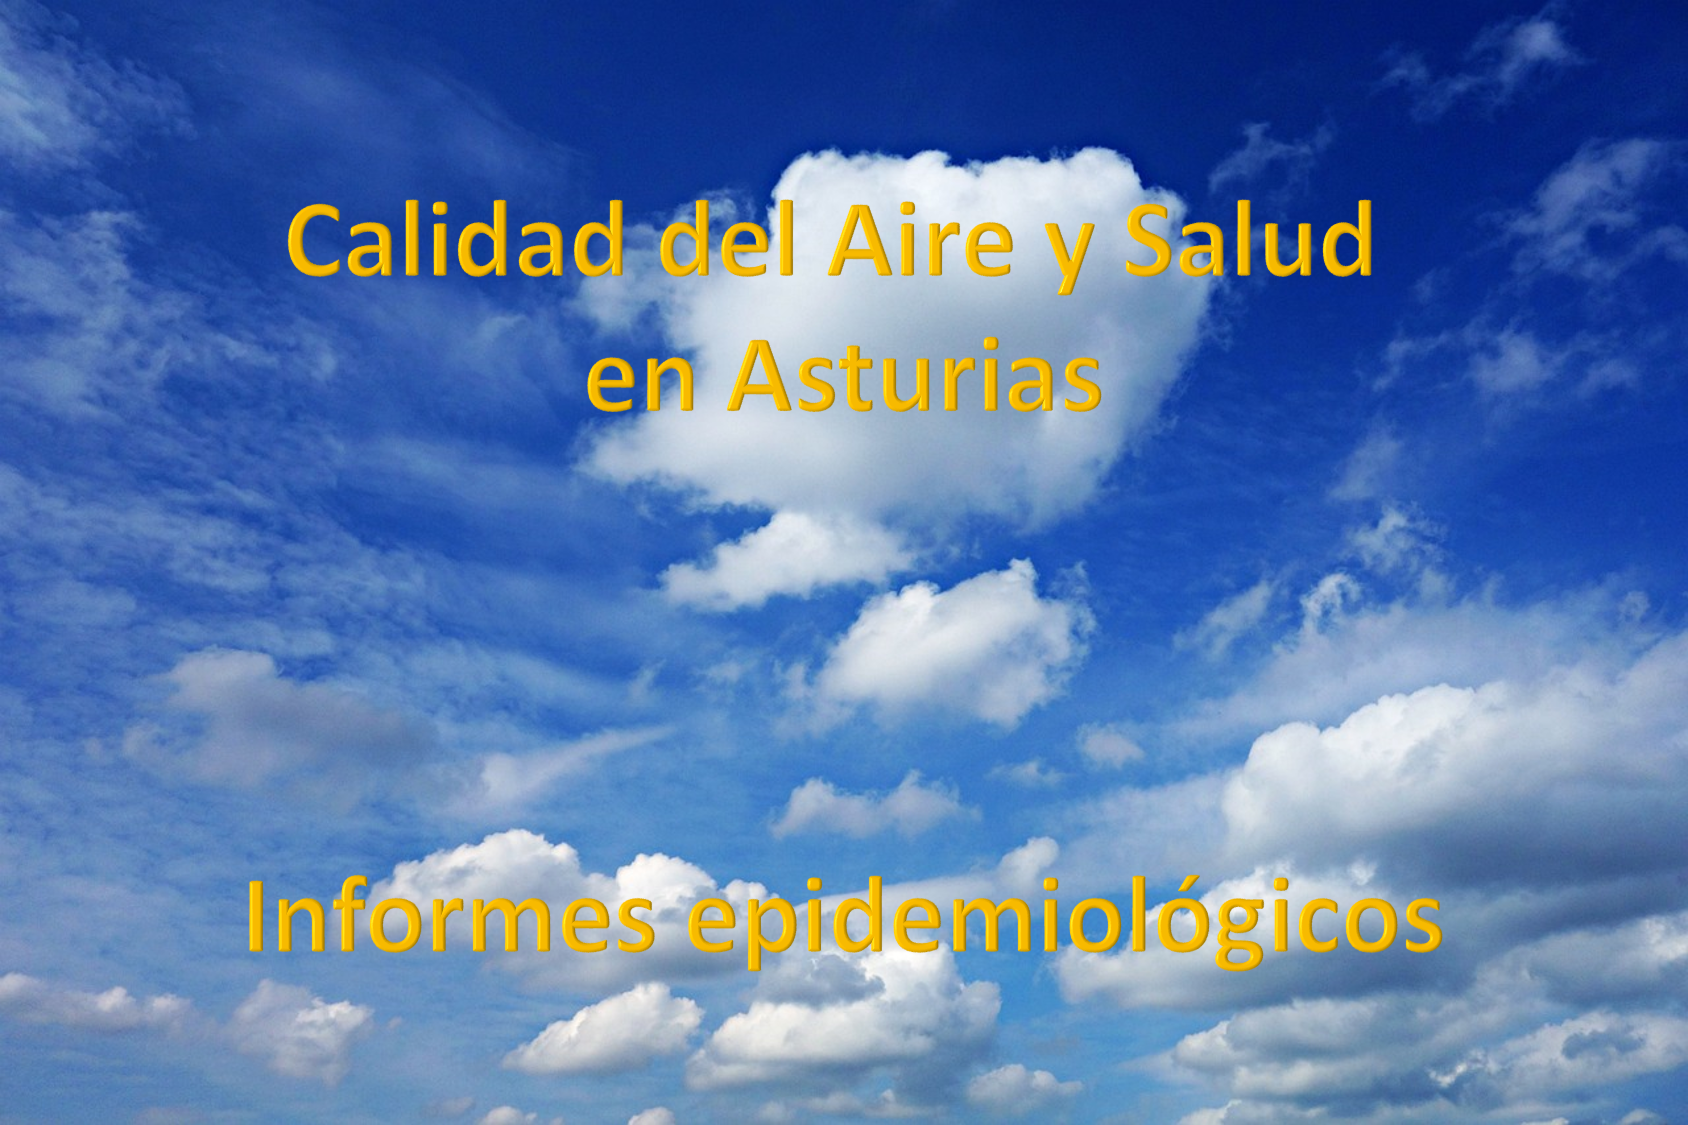 Calidad de aire y salud en Asturias